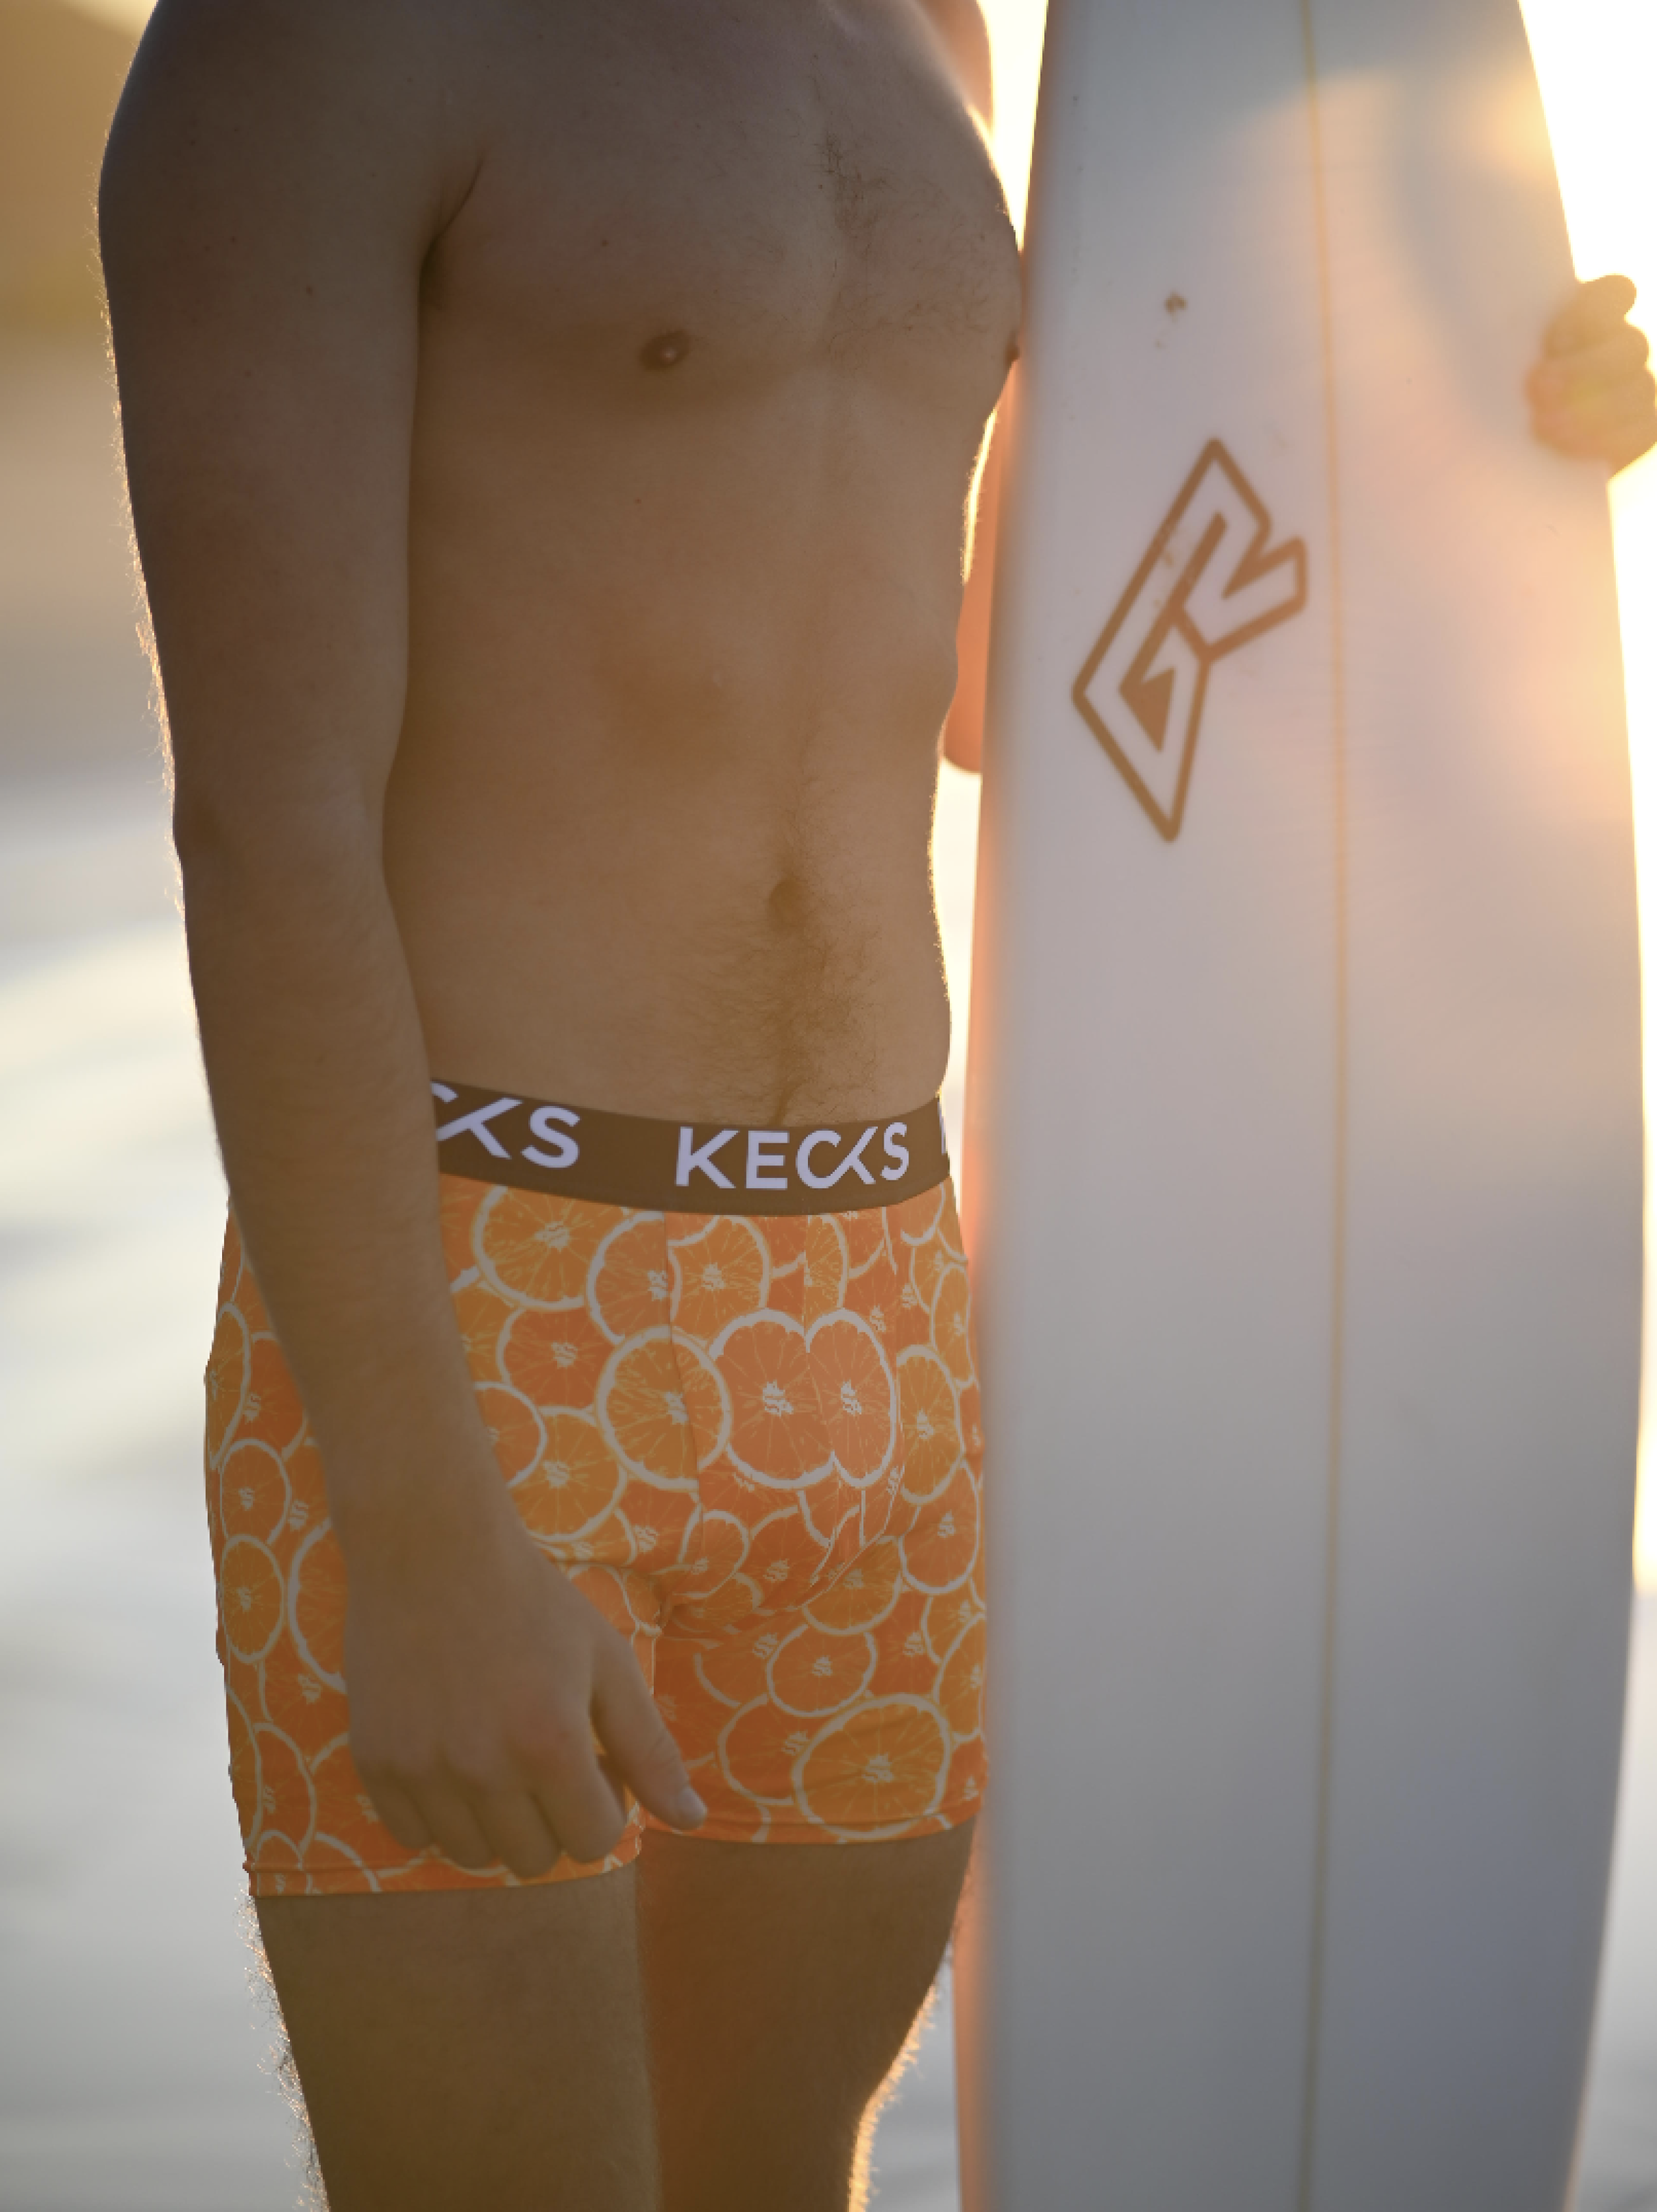 Kecks - That comfy underwear Swag 😎😌 Kecks from street wear to active  wear … #underwearforanywhere 🙌🏻💪🏻👌🏻😁🏃🏼‍♀️🏃🏽‍♂️ 📸 @kevinsawyer